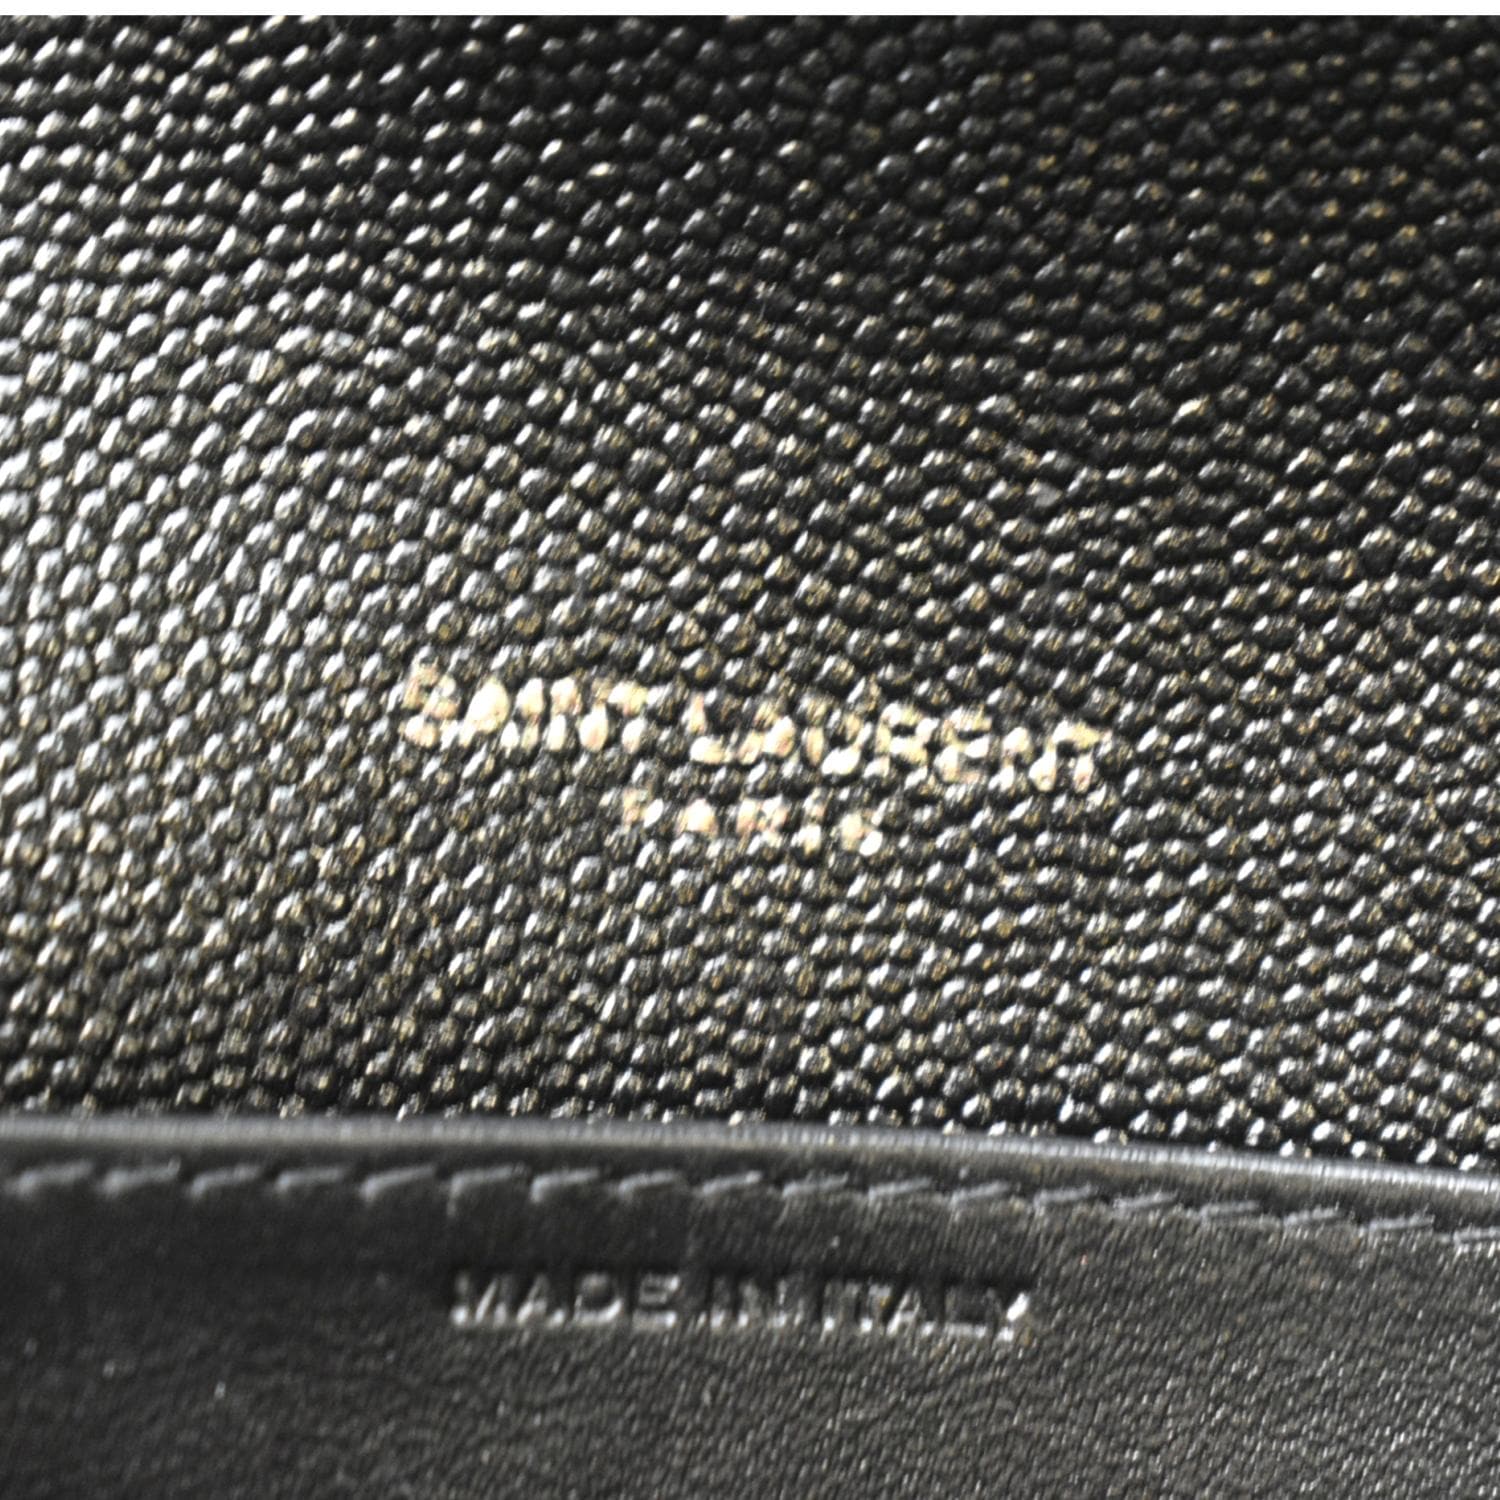 Ysl Saint Laurent slp woman chain flap bag original leather